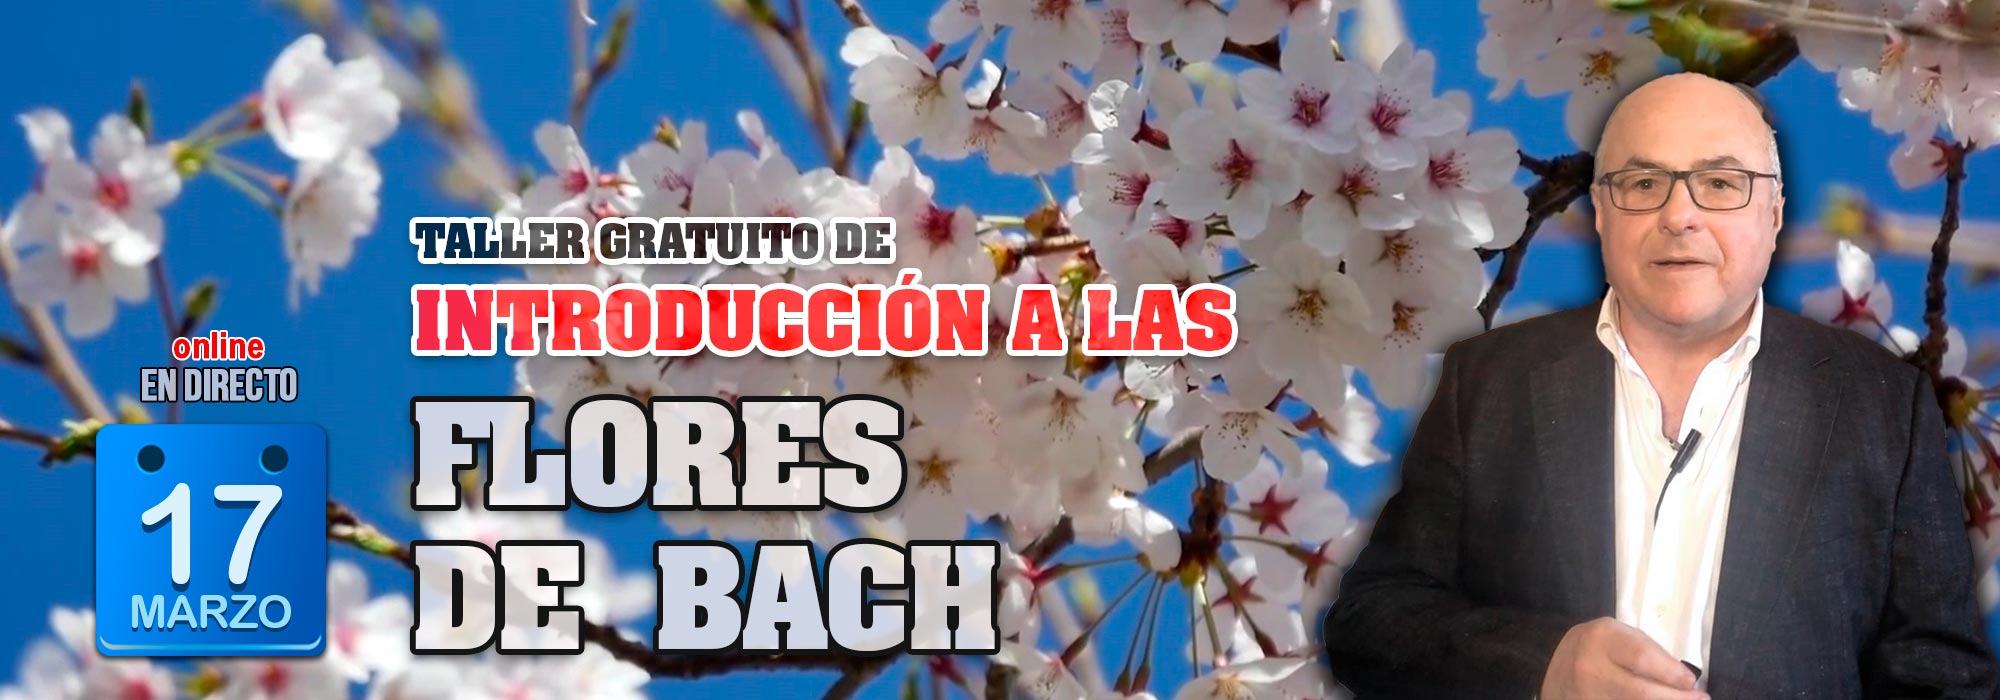 Introducción a las Flores de Bach: Taller gratuito online